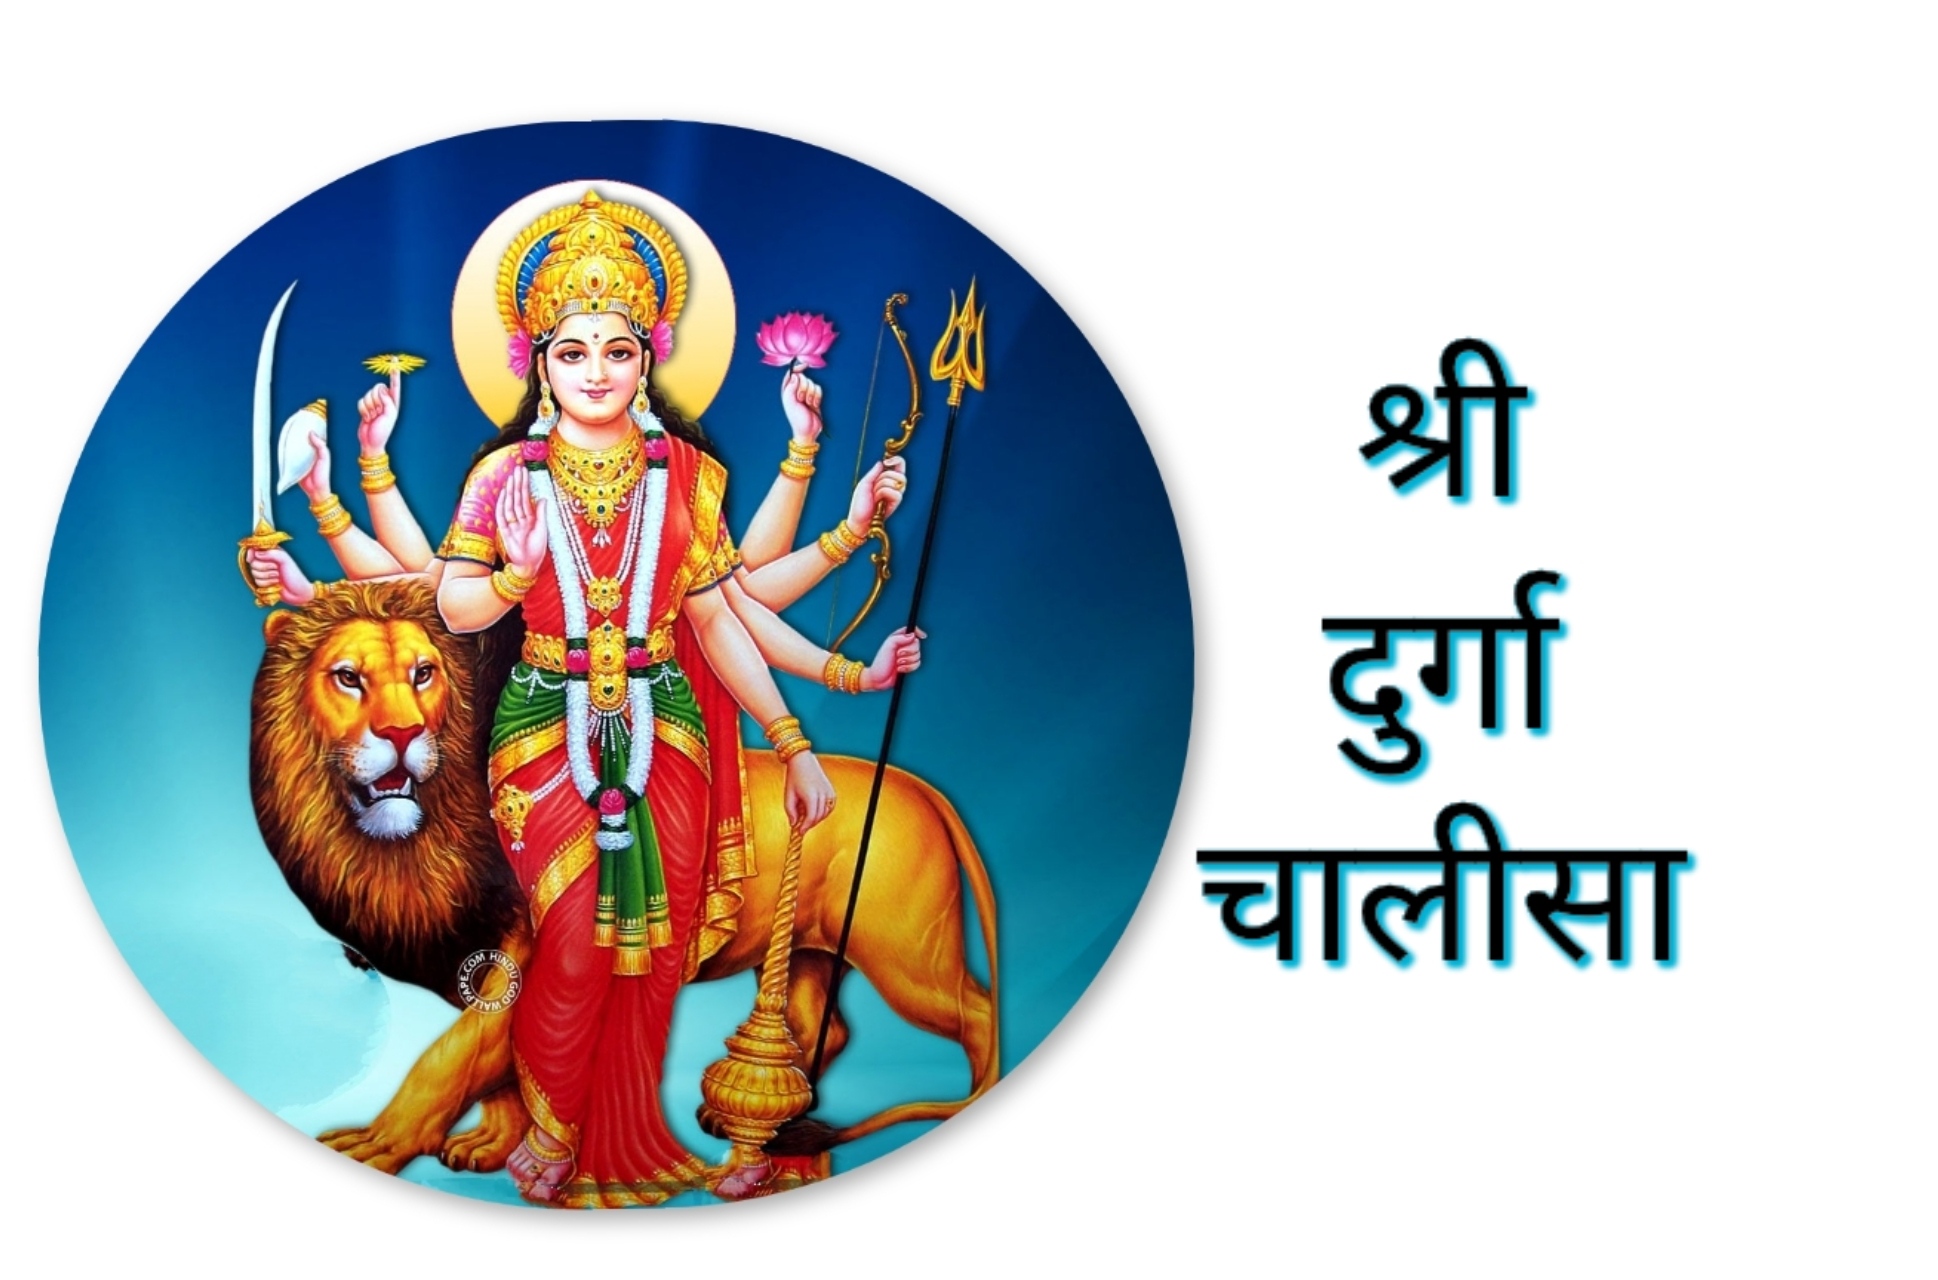 Shri Durga Chalisa